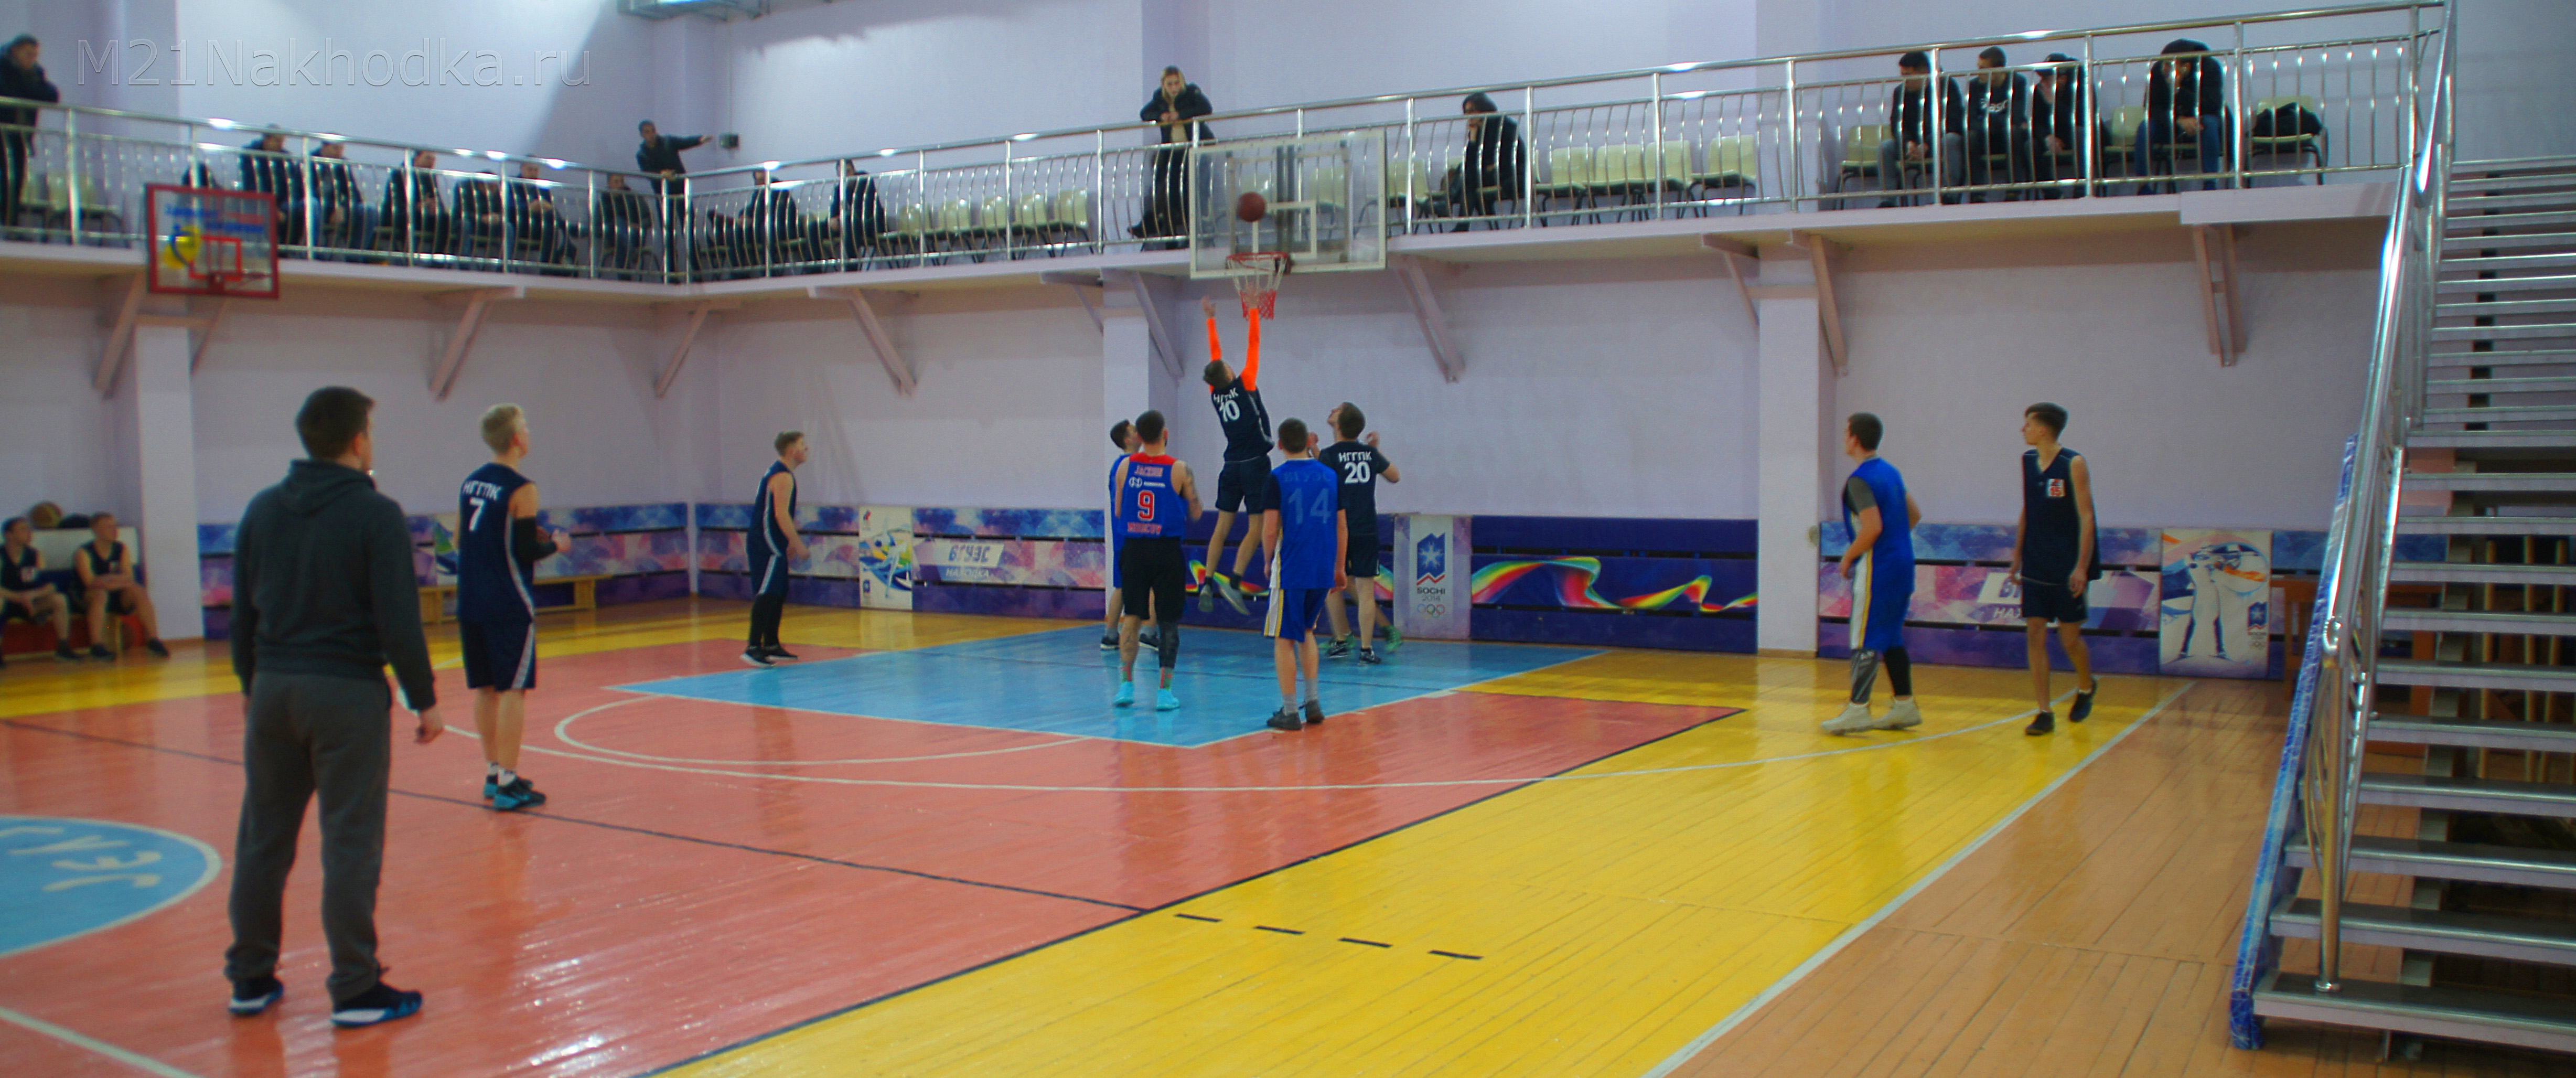 Баскетбольные баталии в филиале ВГУЭС — студенты трёх учебных заведений соревновались в ловкости, thumb